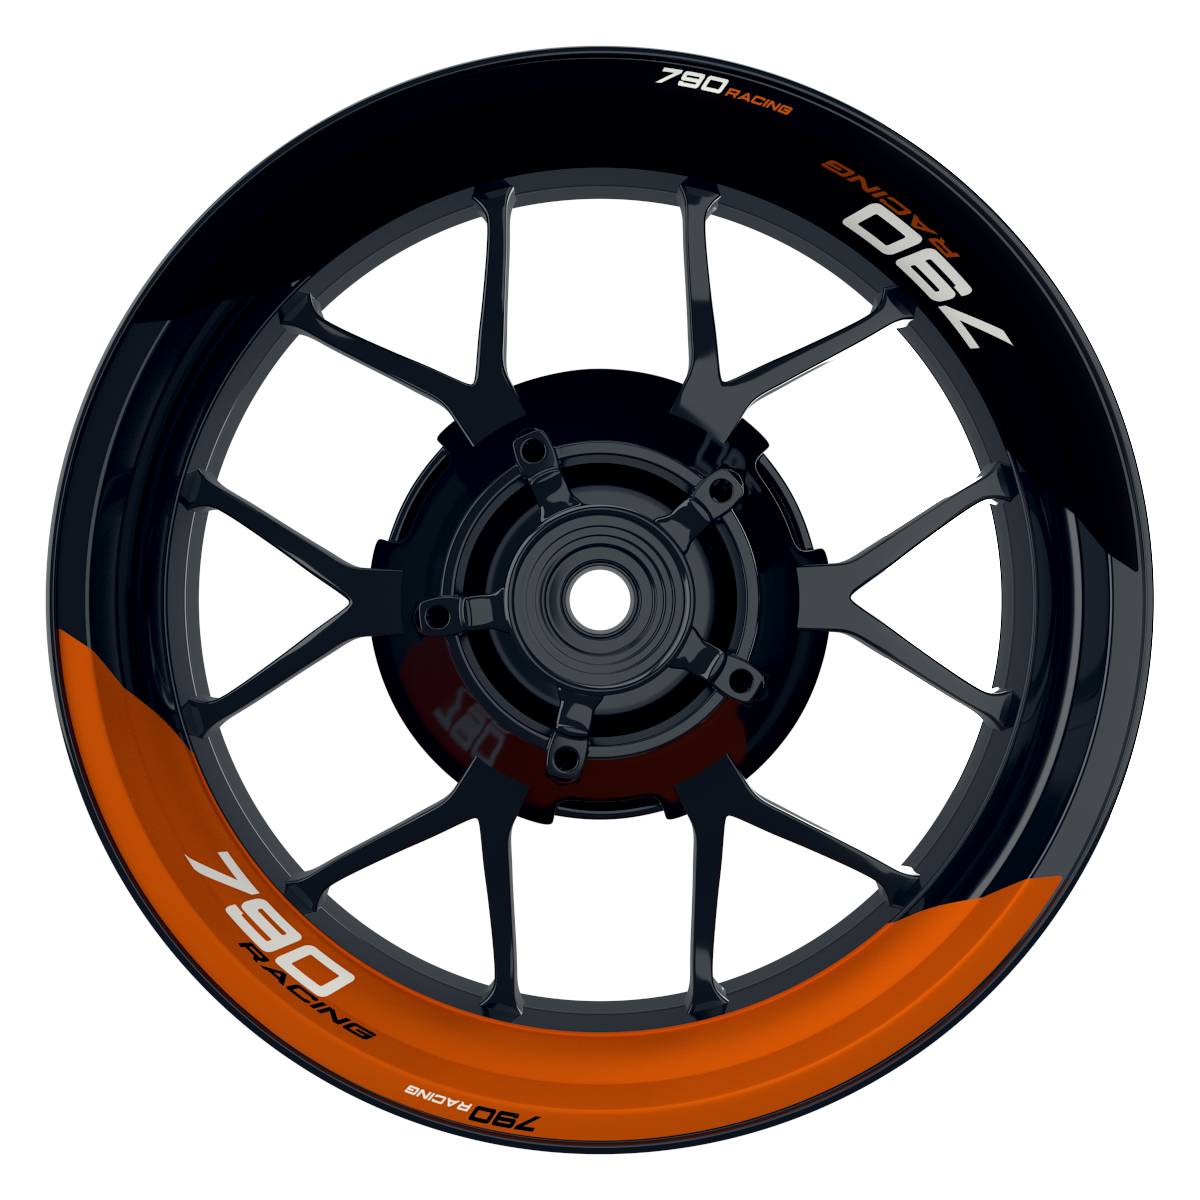 KTM Racing 790 halb halb schwarz orange Frontansicht